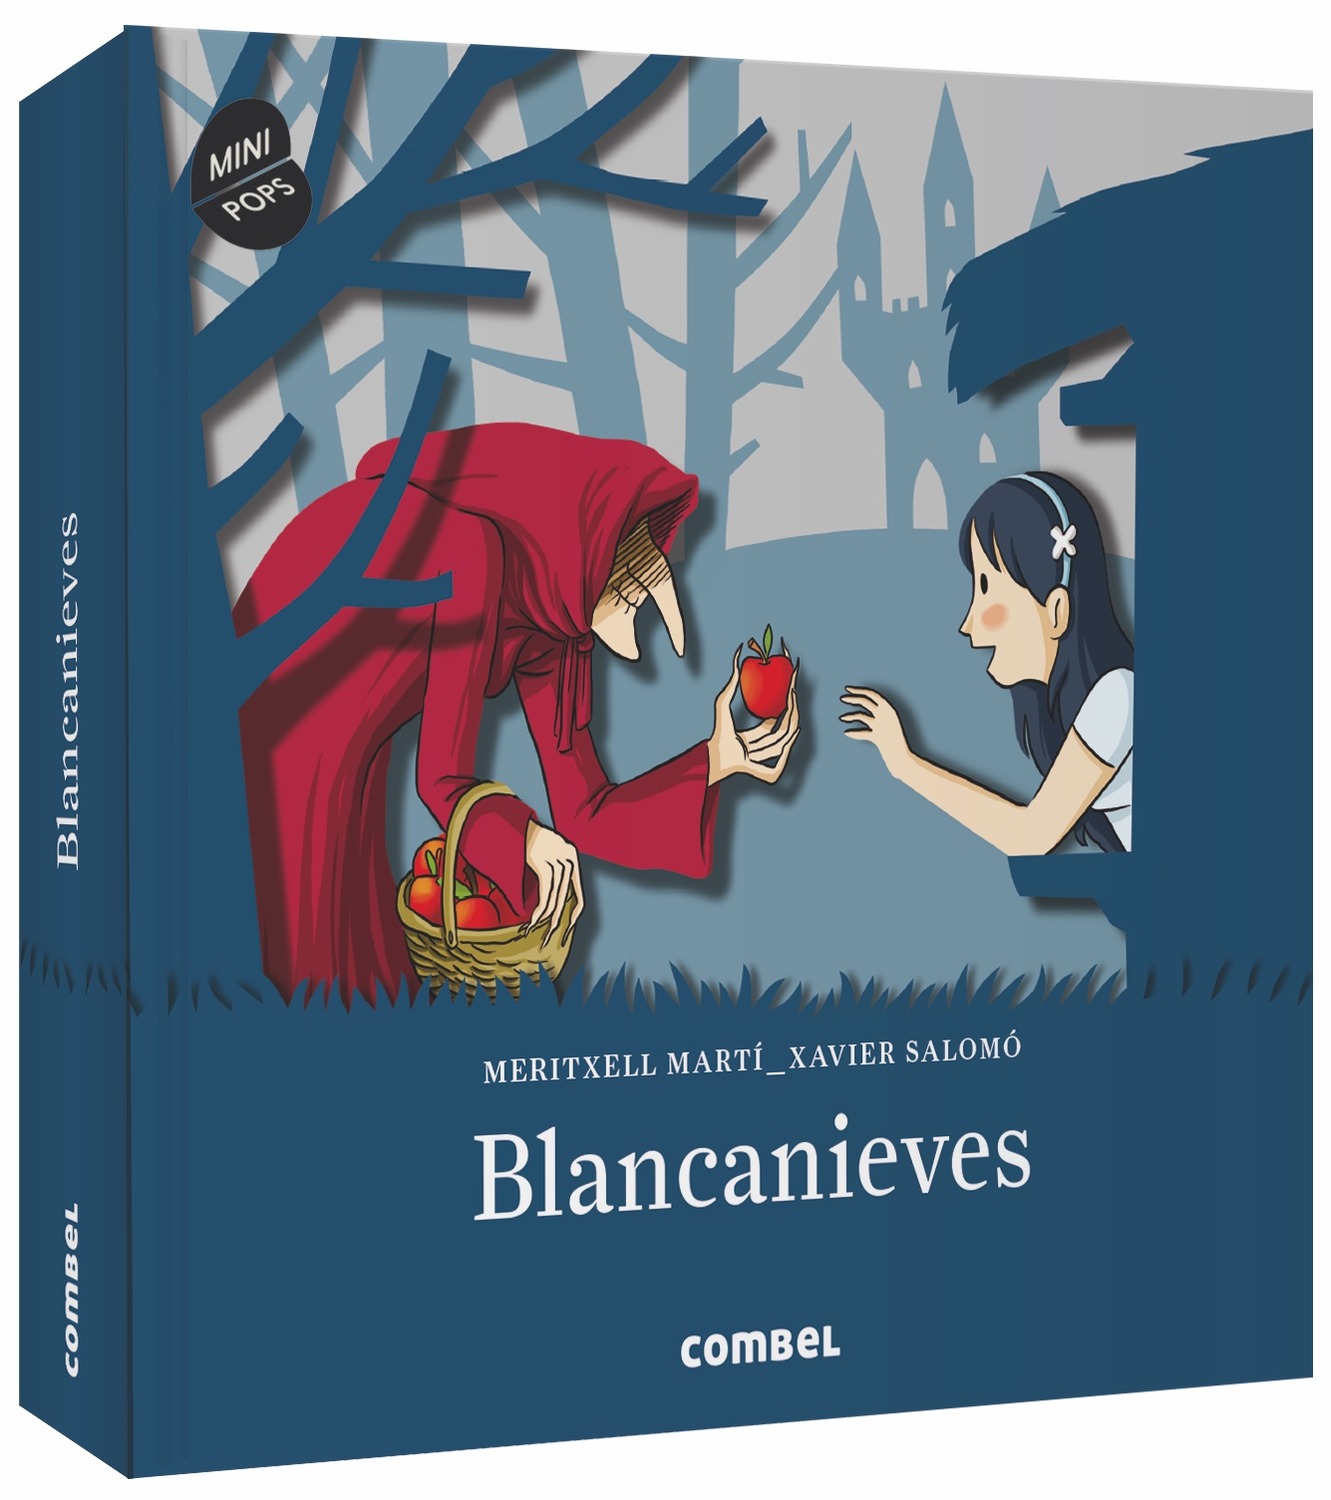 Blancanieves: Combel Editorial